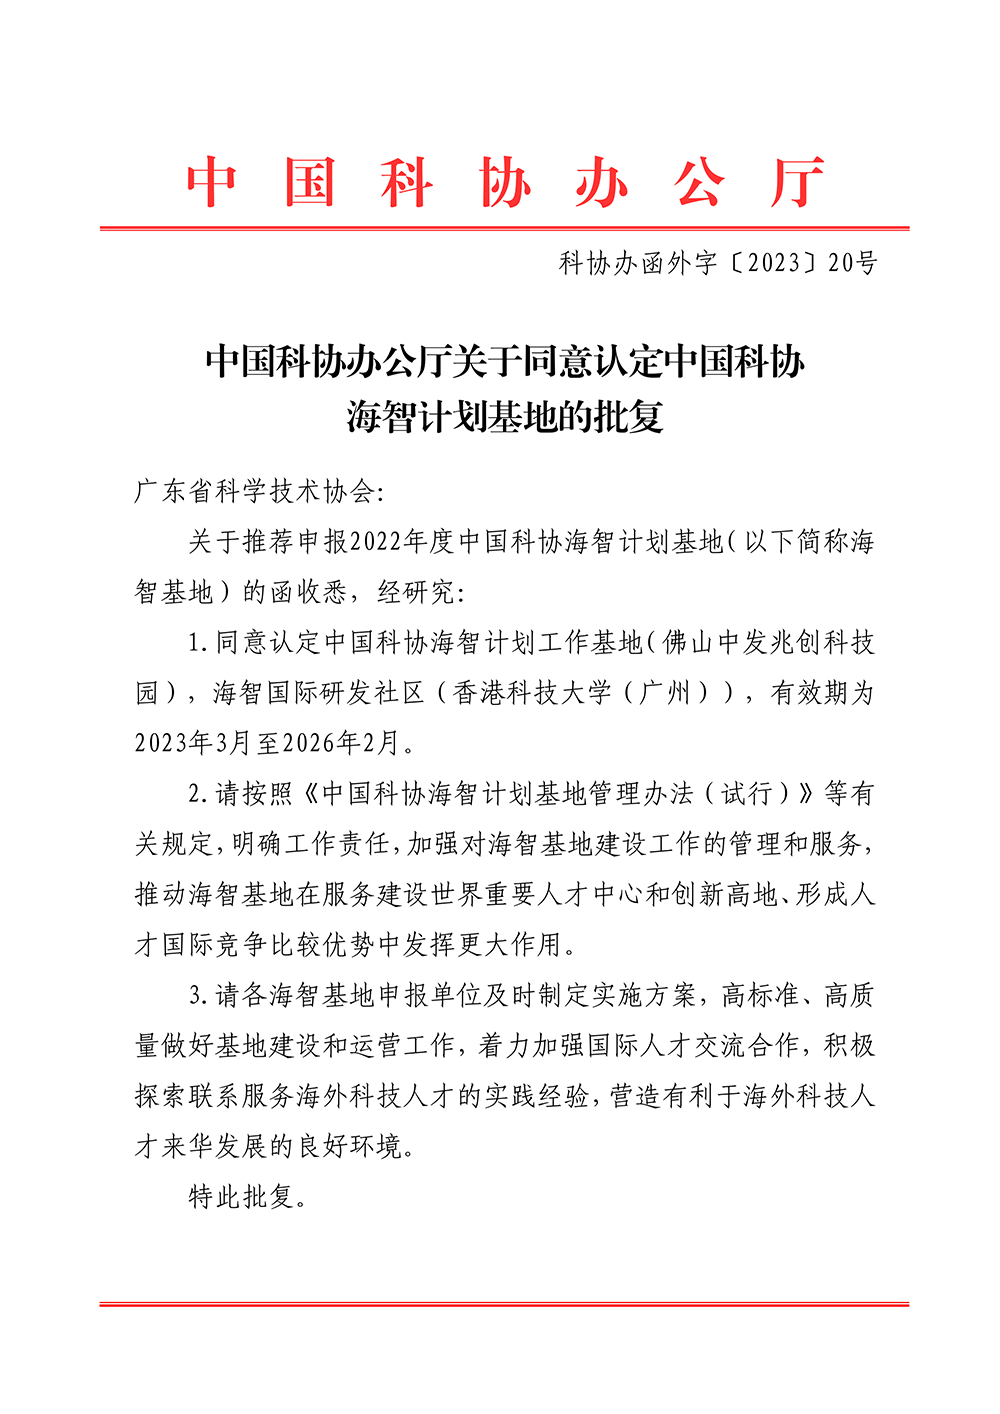 中国科协办公厅关于同意认定中国科协海智计划基地的批复_00.png